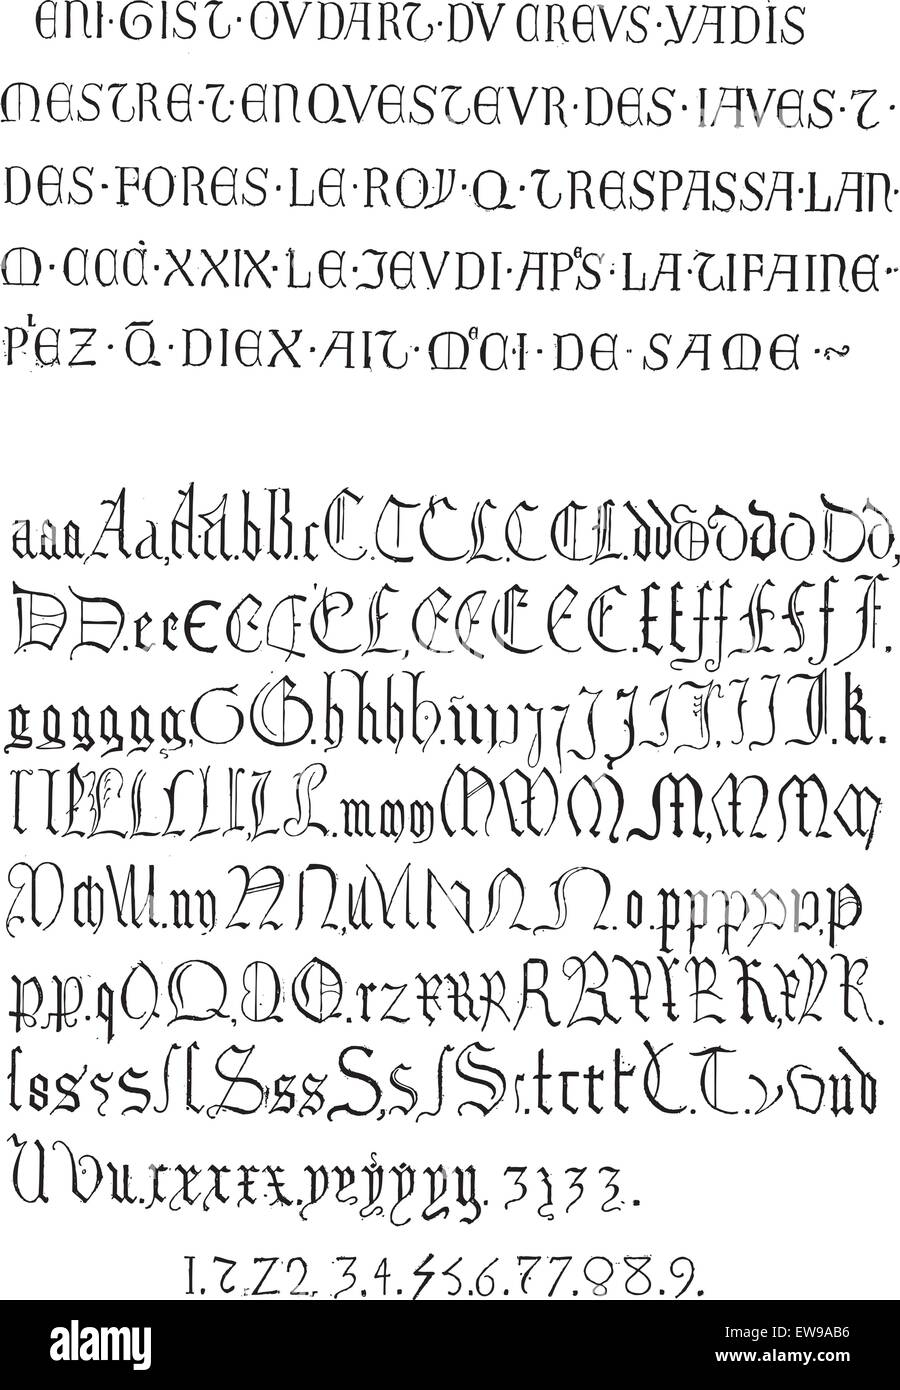 Gothic alphabet immagini e fotografie stock ad alta risoluzione - Alamy